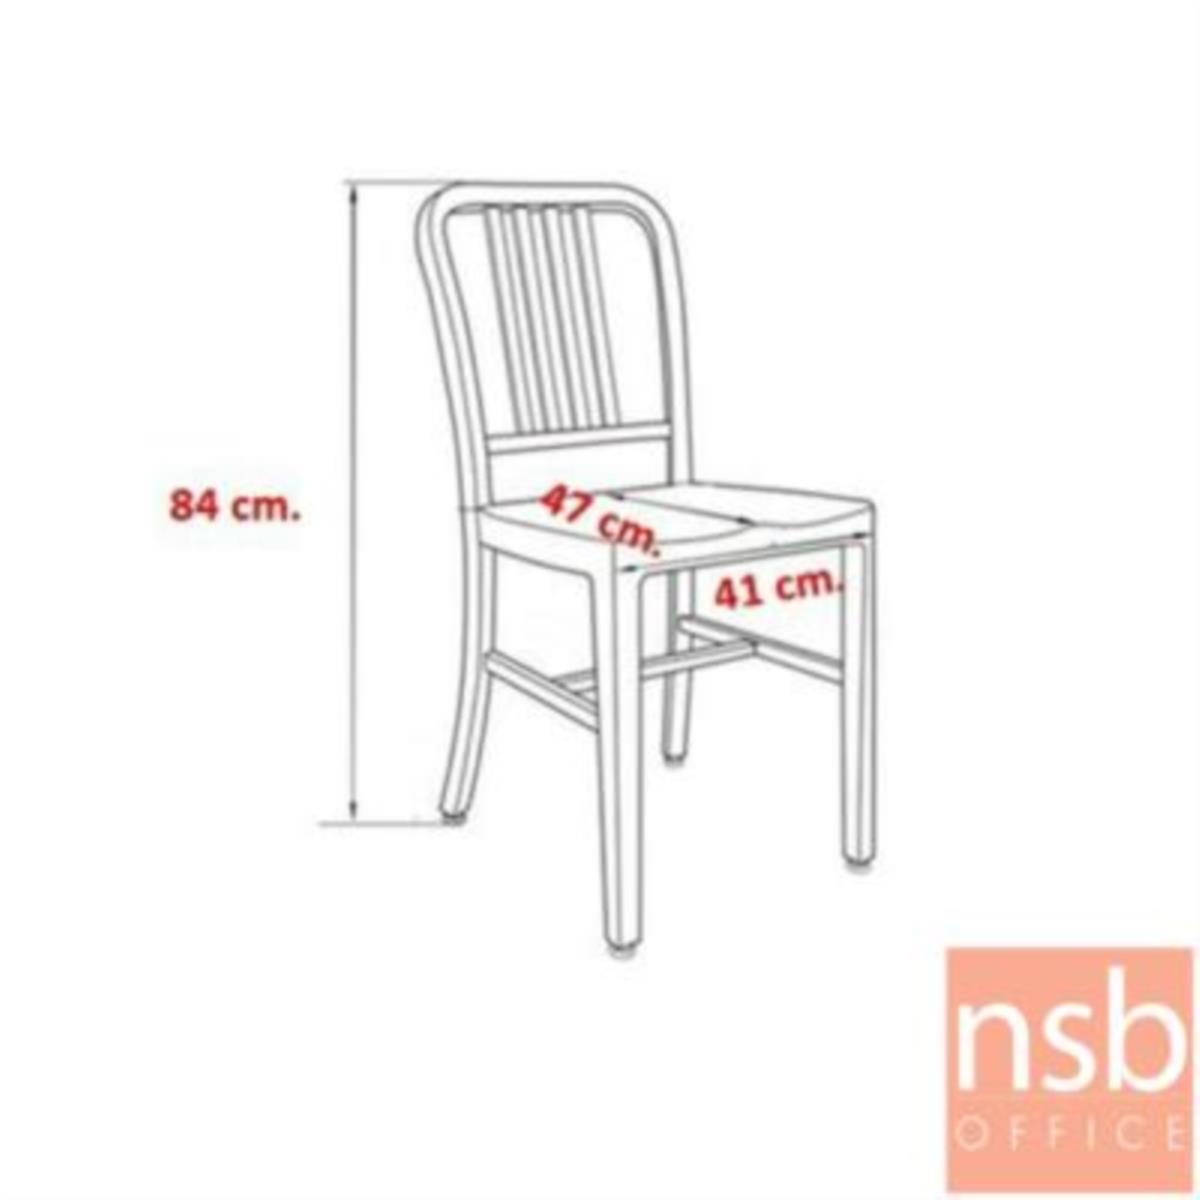 เก้าอี้โมเดิร์นเหล็ก รุ่น Sarto (ซาร์โต) ขนาด 41W cm. โครงขาเหล็ก